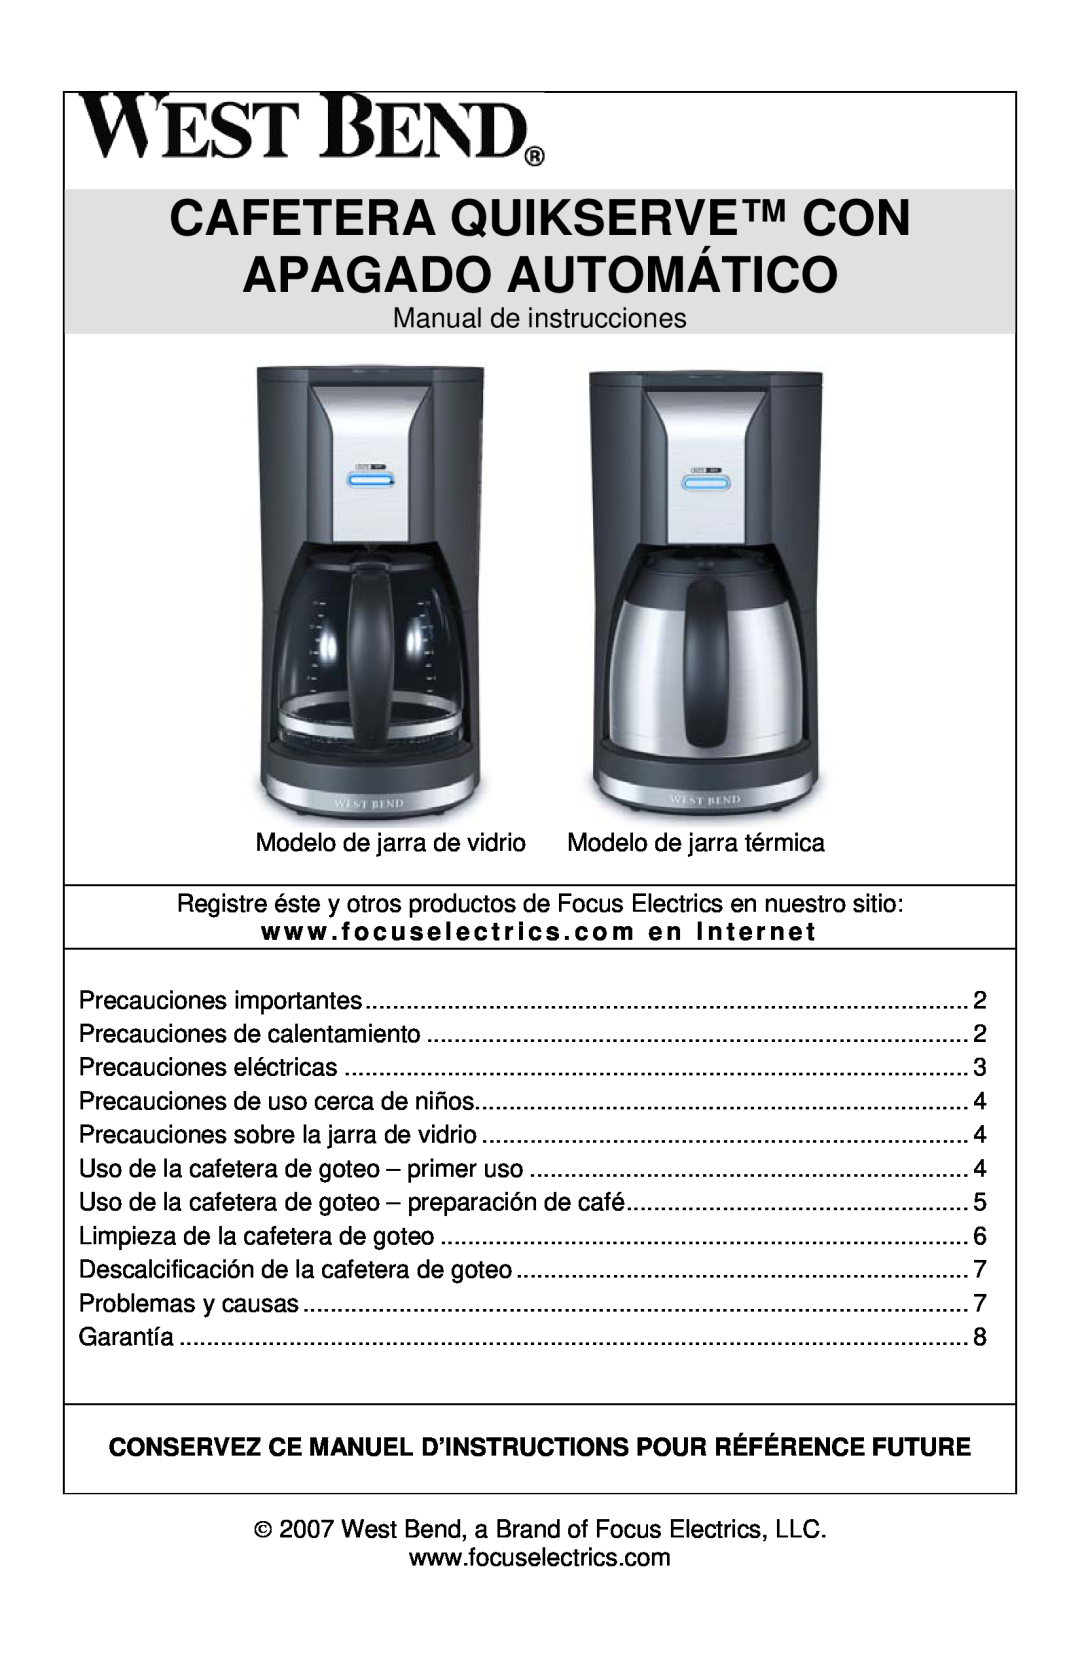 West Bend Auto-off Coffeemaker instruction manual Cafetera Quikserve Con Apagado Automático, Manual de instrucciones 